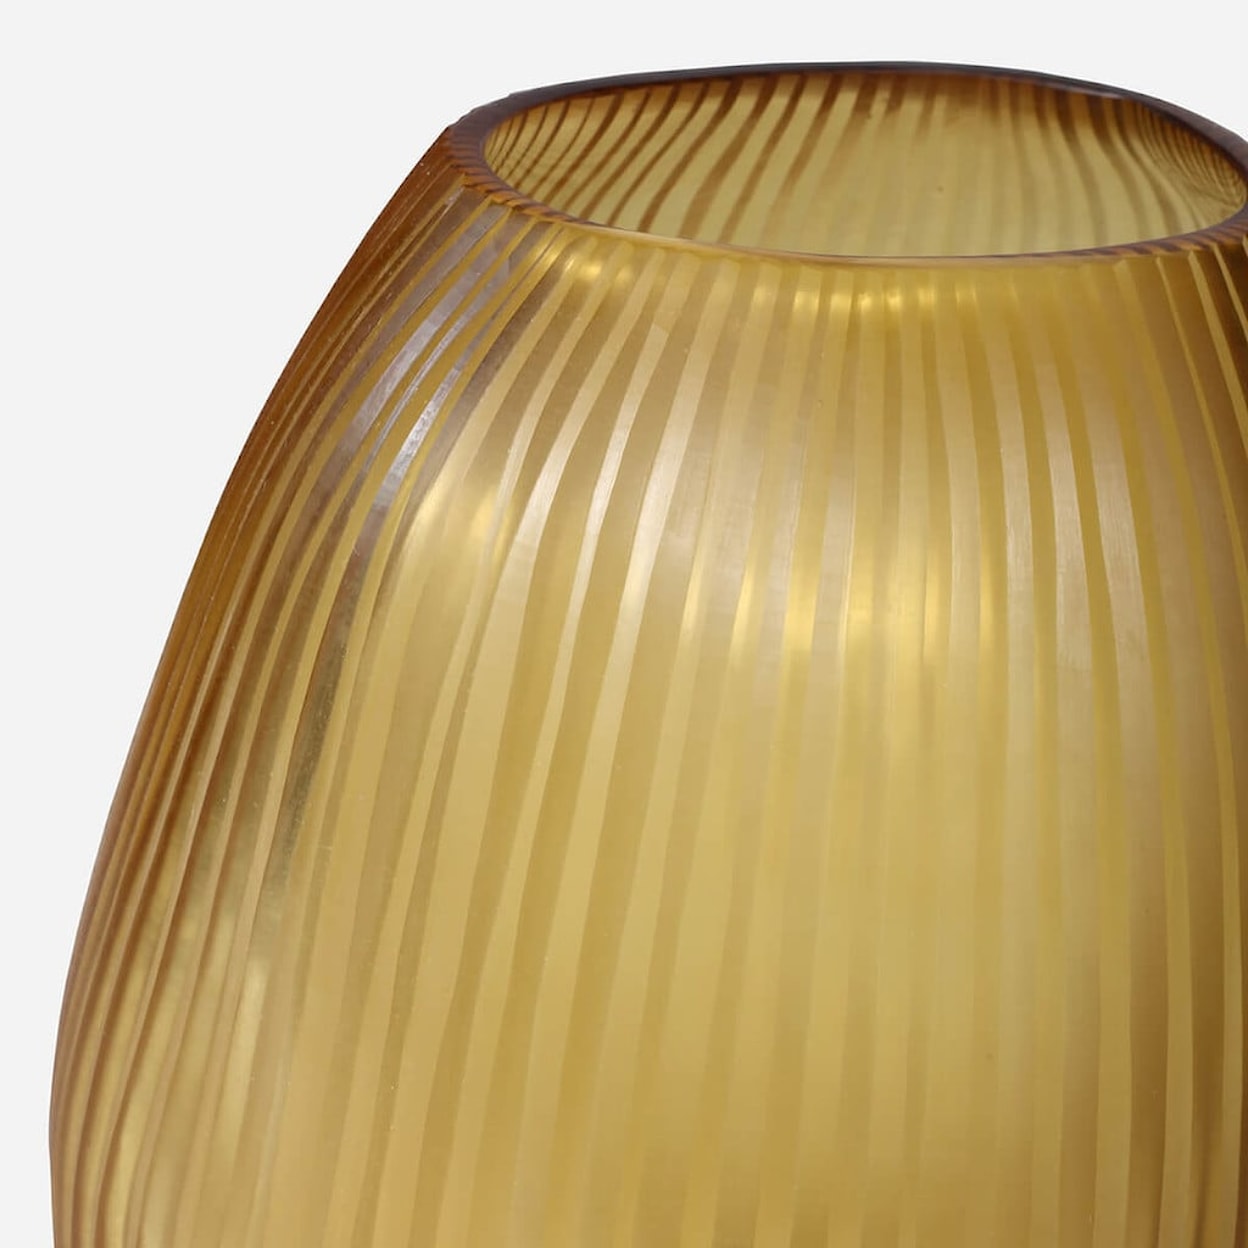 BOBO Intriguing Objects BOBO Intriguing Objects Seine Gold Sculptural Glass Vase - Large